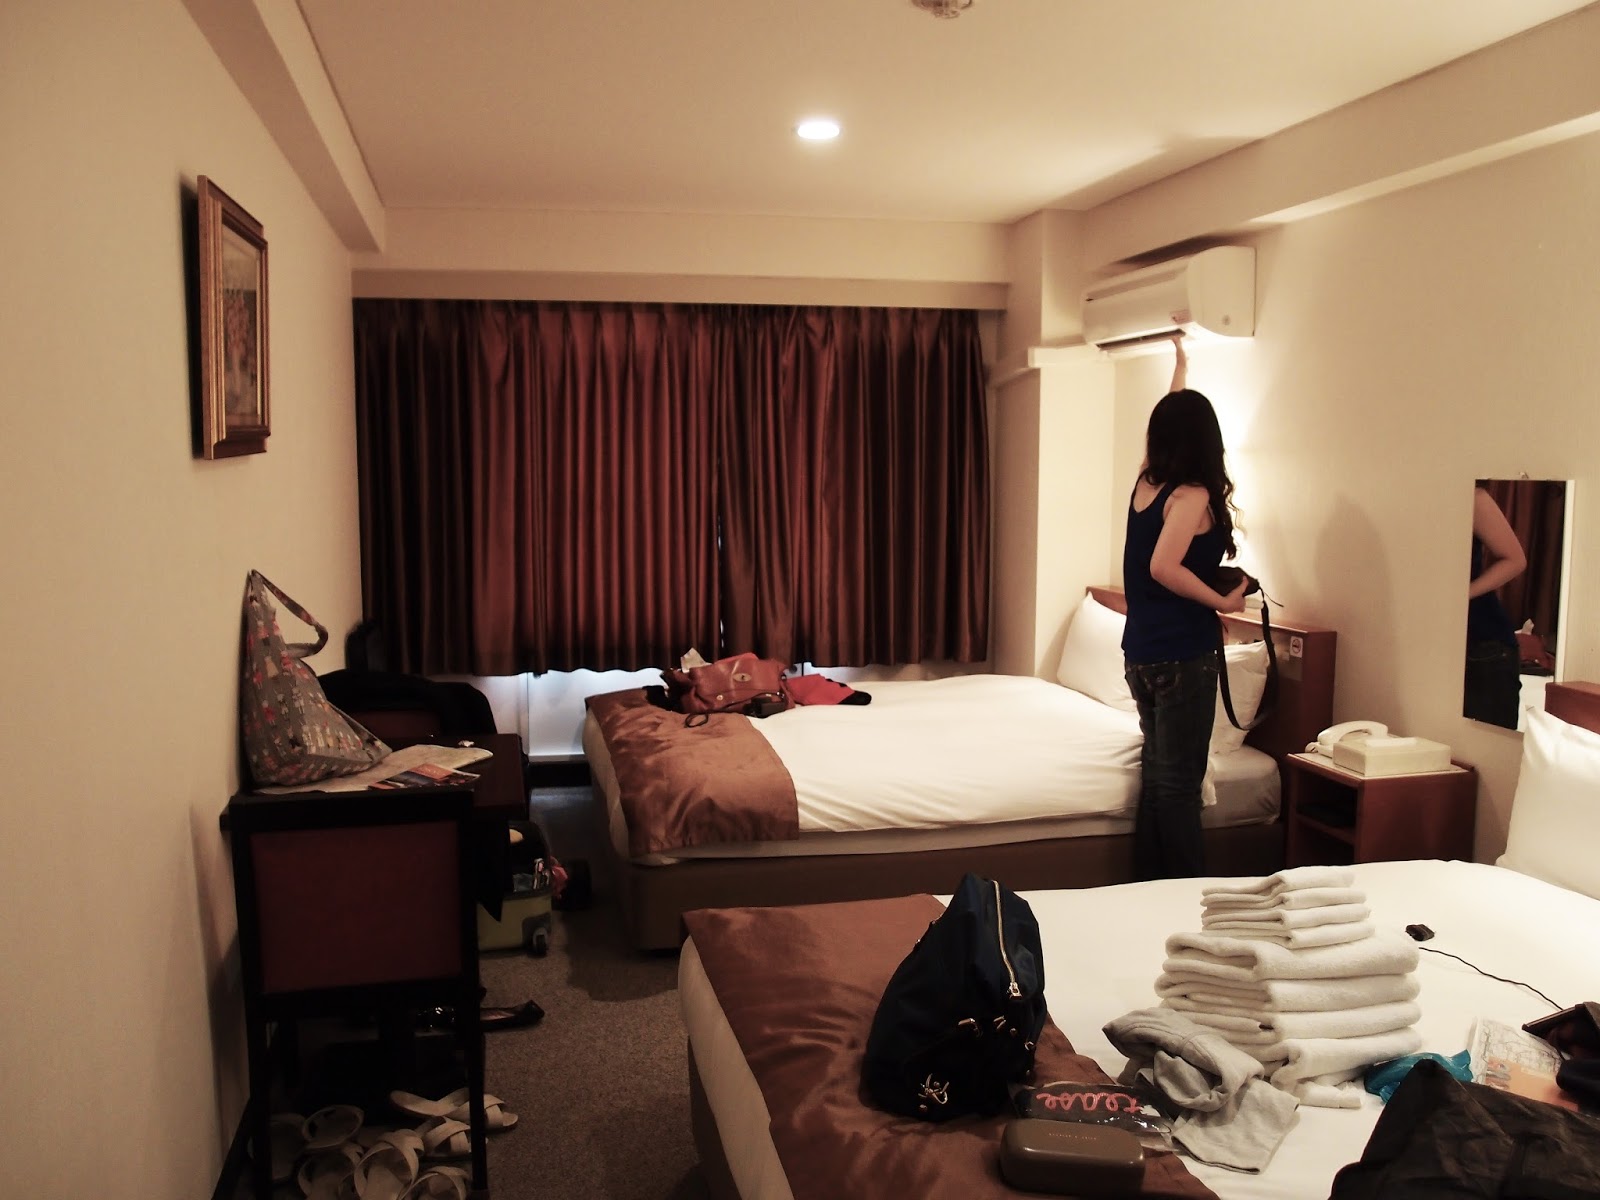 Ladyboy freundin hotelzimmer gefickt photo